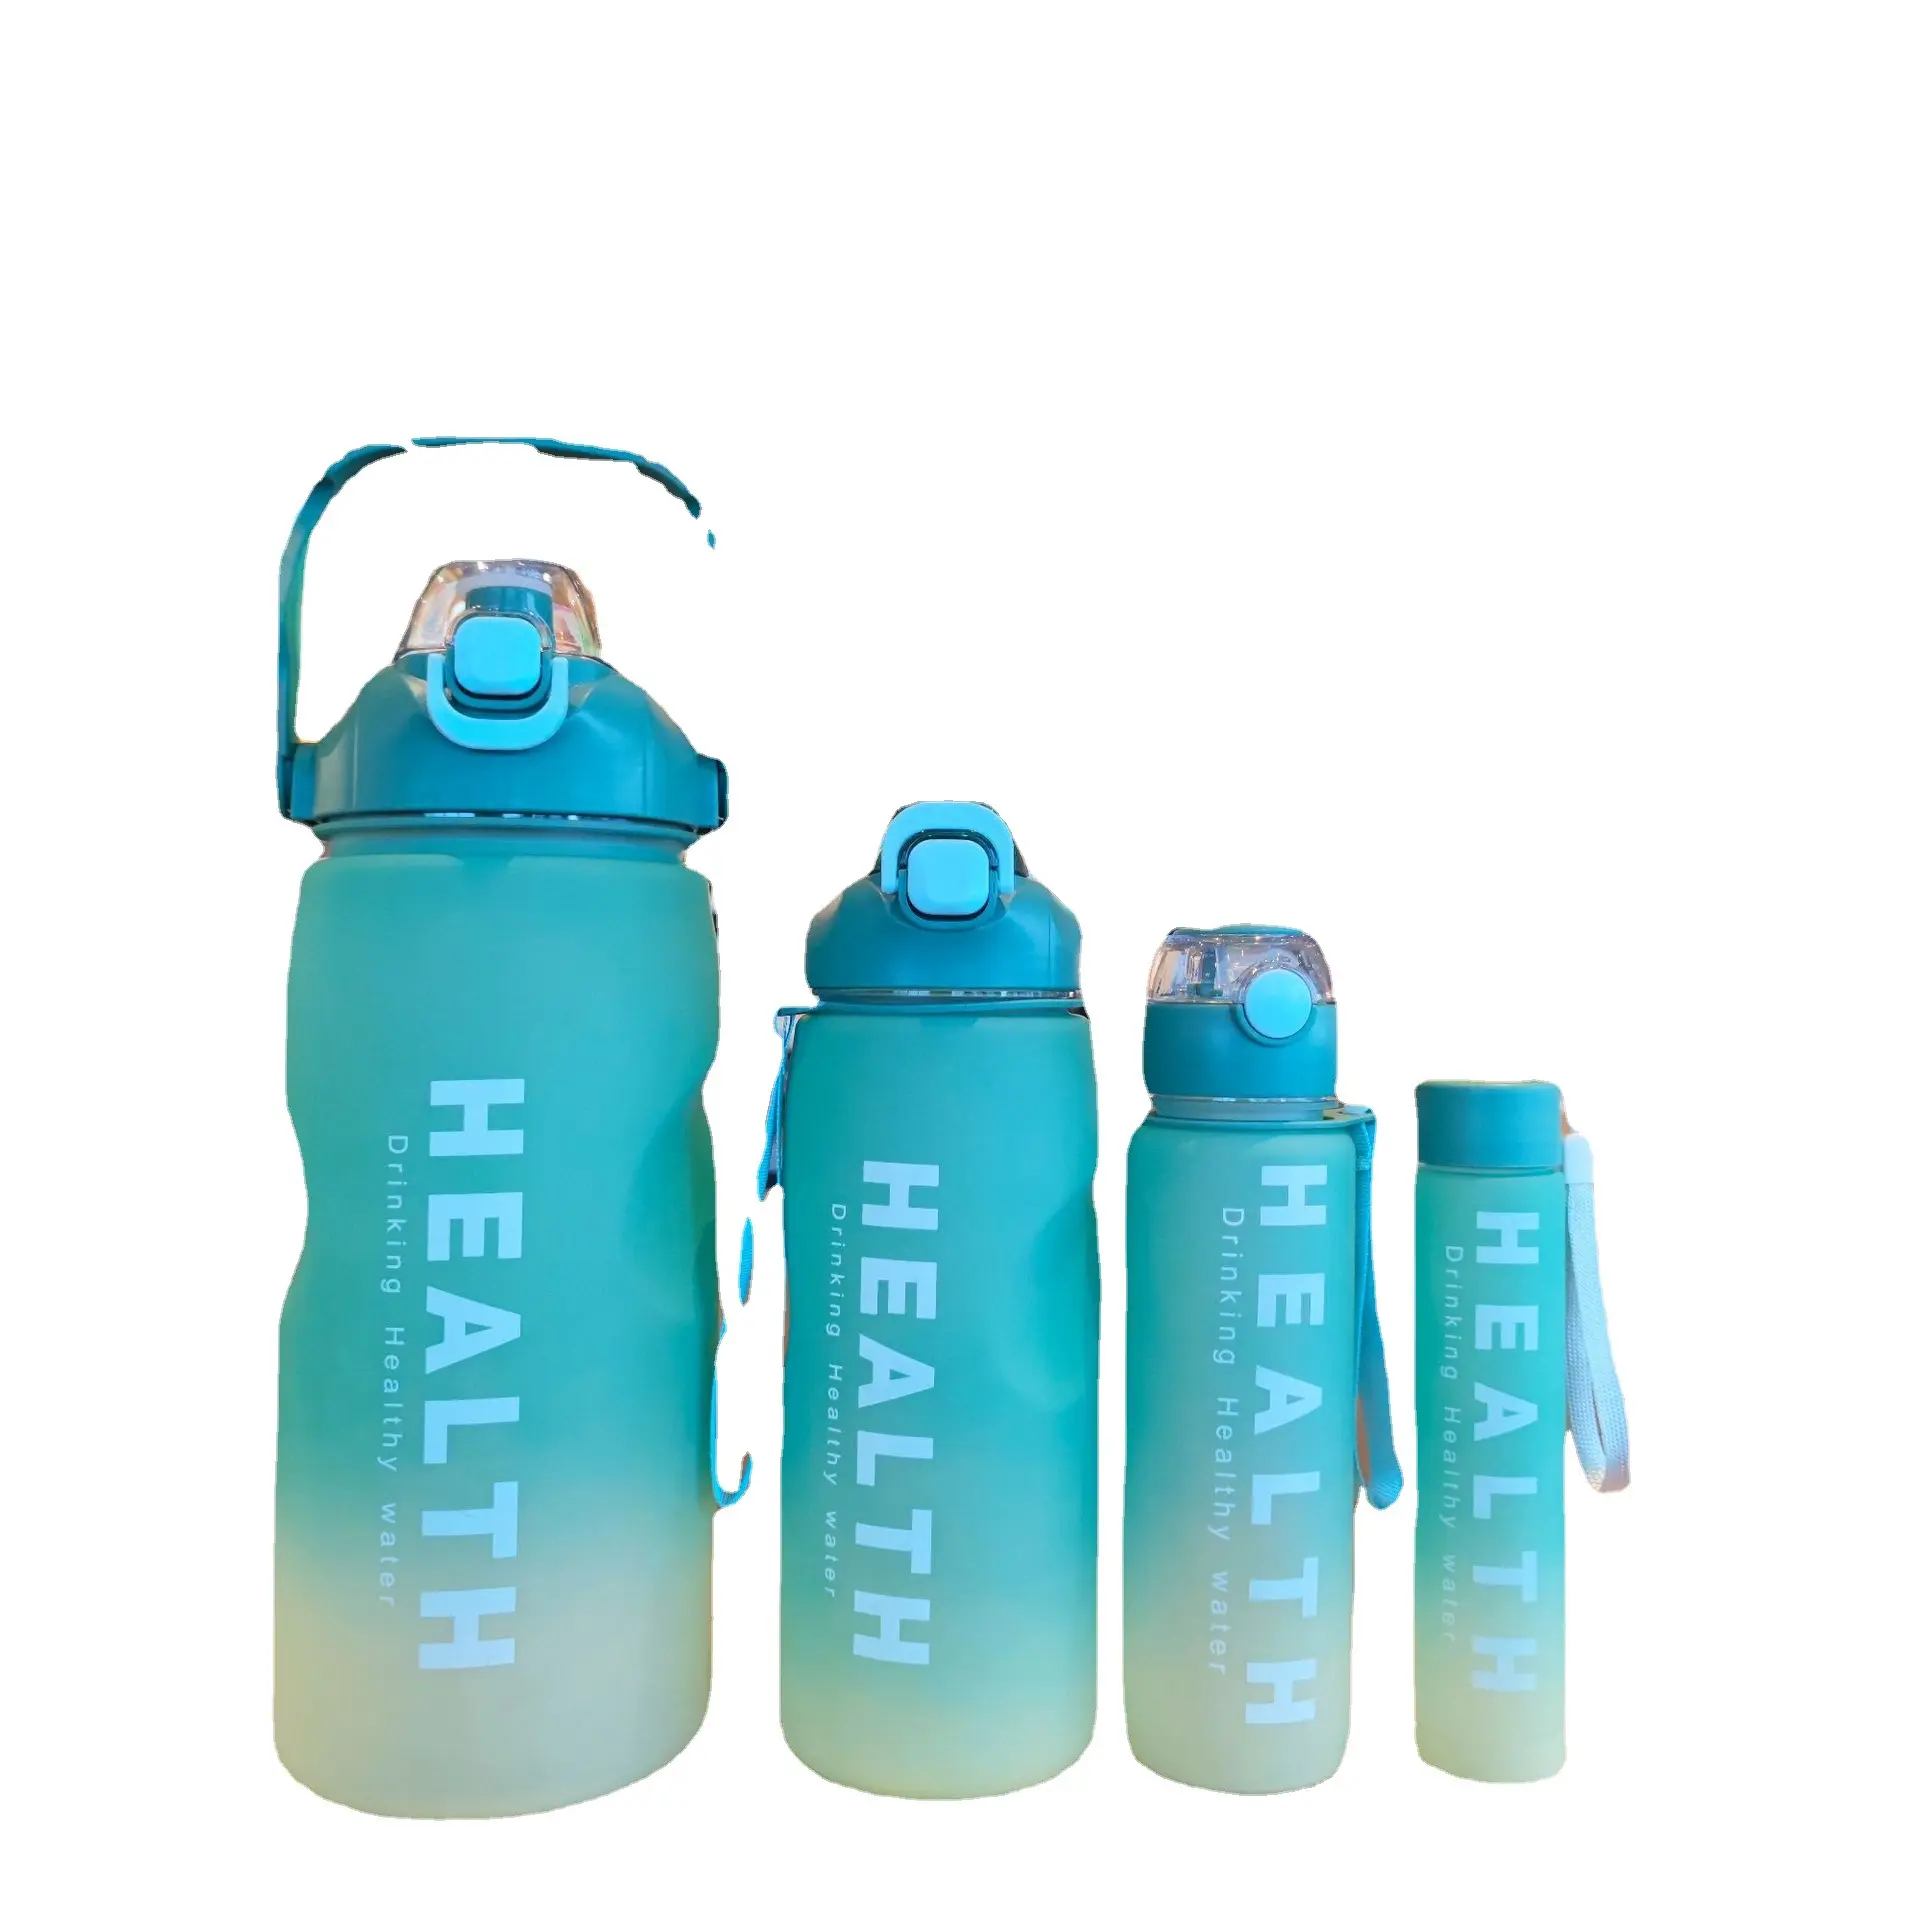 Wealtime Top-Seller eine Gallone große Sport flasche, 4 in 1 motivierende Wasser flasche mit 3D-Aufklebern und 2D-Aufklebern